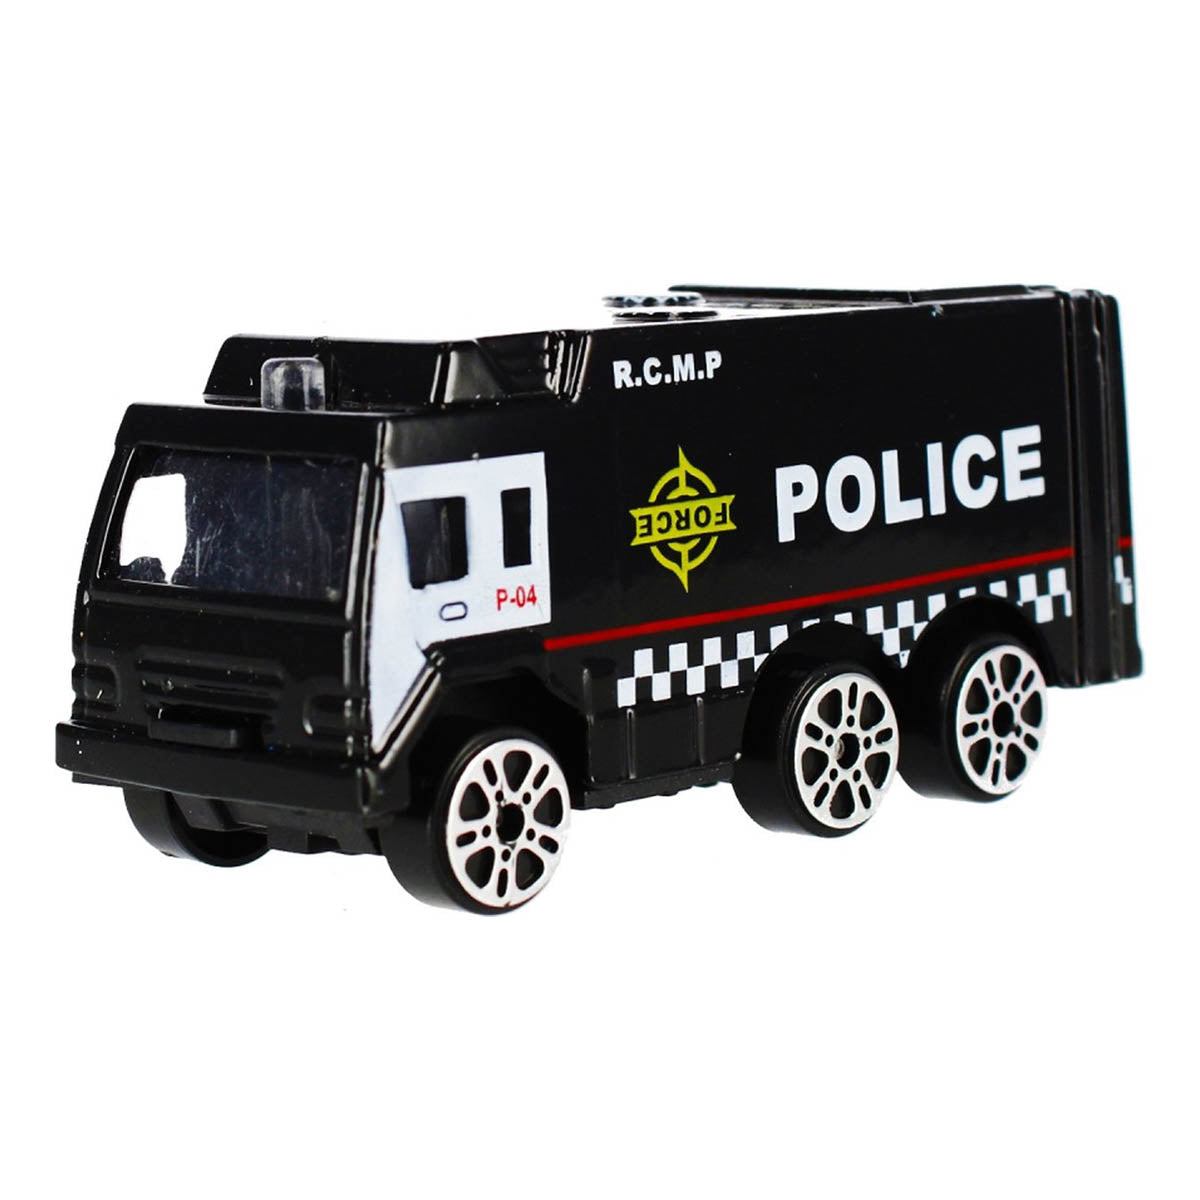 Ariko Parking Police - Avec hélicoptère, voiture à jet d'eau et autres voitures sympas - 1:64